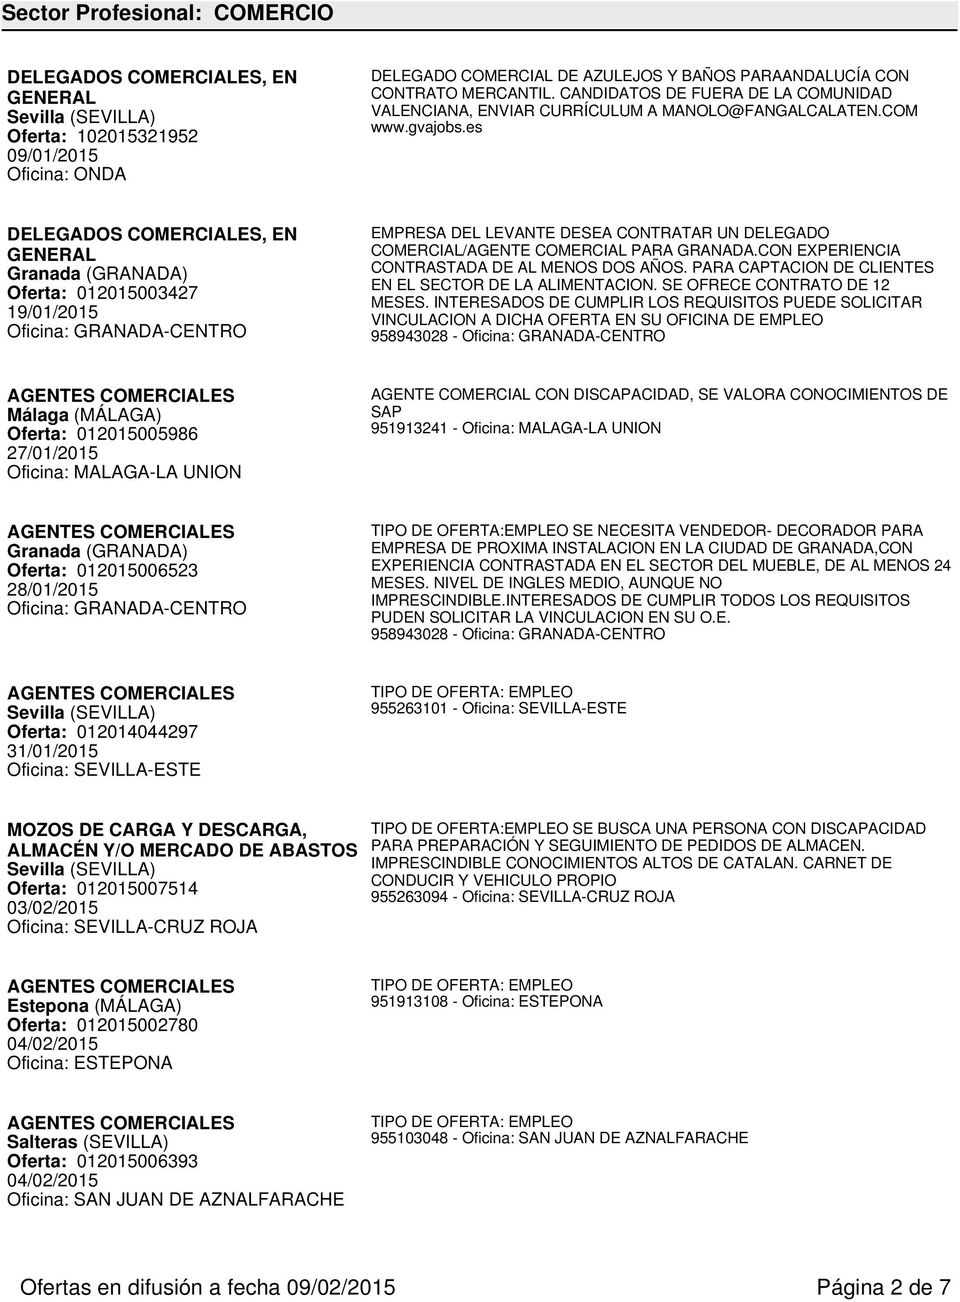 es DELEGADOS COMERCIALES, EN Granada (GRANADA) Oferta: 012015003427 19/01/2015 Oficina: GRANADA-CENTRO EMPRESA DEL LEVANTE DESEA CONTRATAR UN DELEGADO COMERCIAL/AGENTE COMERCIAL PARA GRANADA.